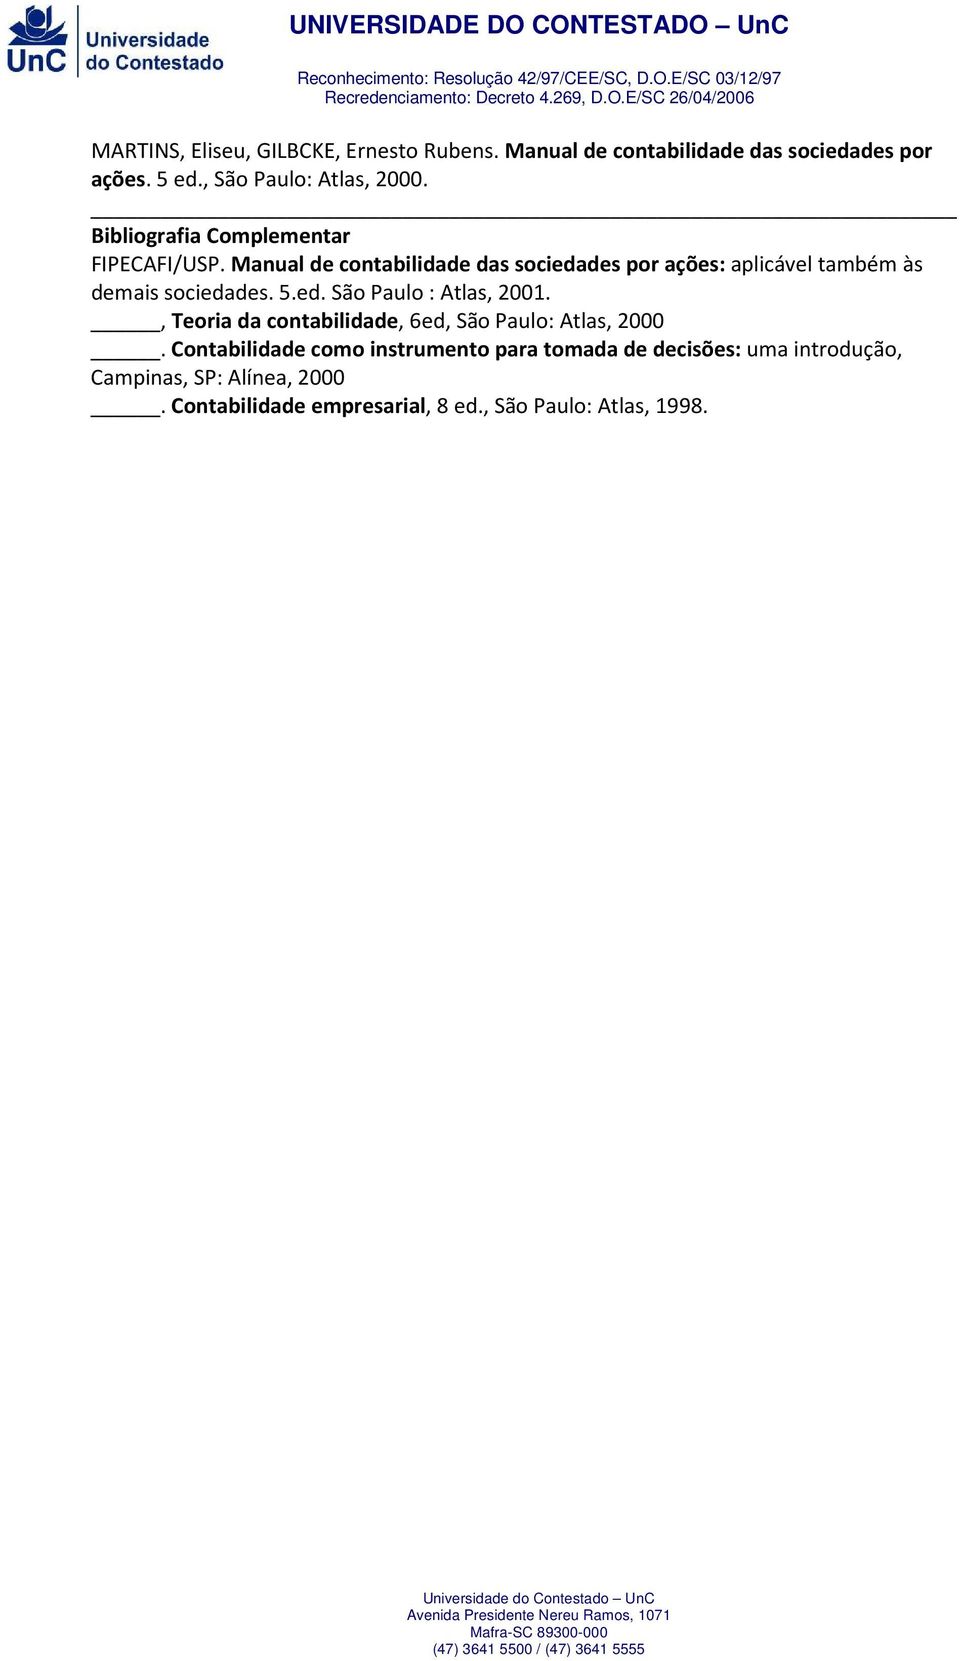 Manual de contabilidade das sociedades por ações: aplicável também às demais sociedades. 5.ed. São Paulo : Atlas, 2001.